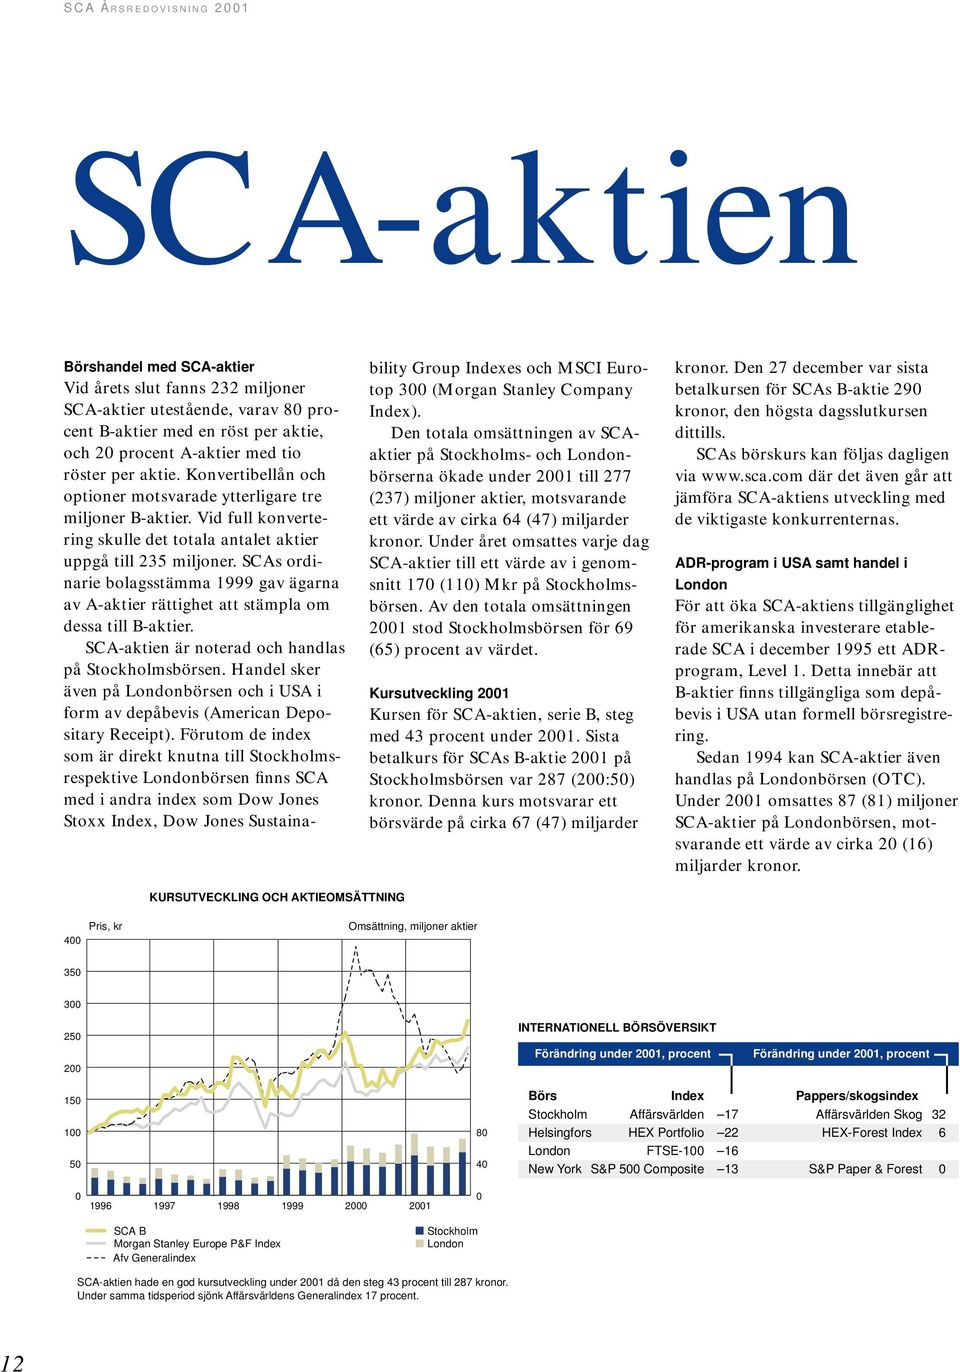 SCAs ordinarie bolagsstämma 1999 gav ägarna av A-aktier rättighet att stämpla om dessa till B-aktier. SCA-aktien är noterad och handlas på Stockholmsbörsen.